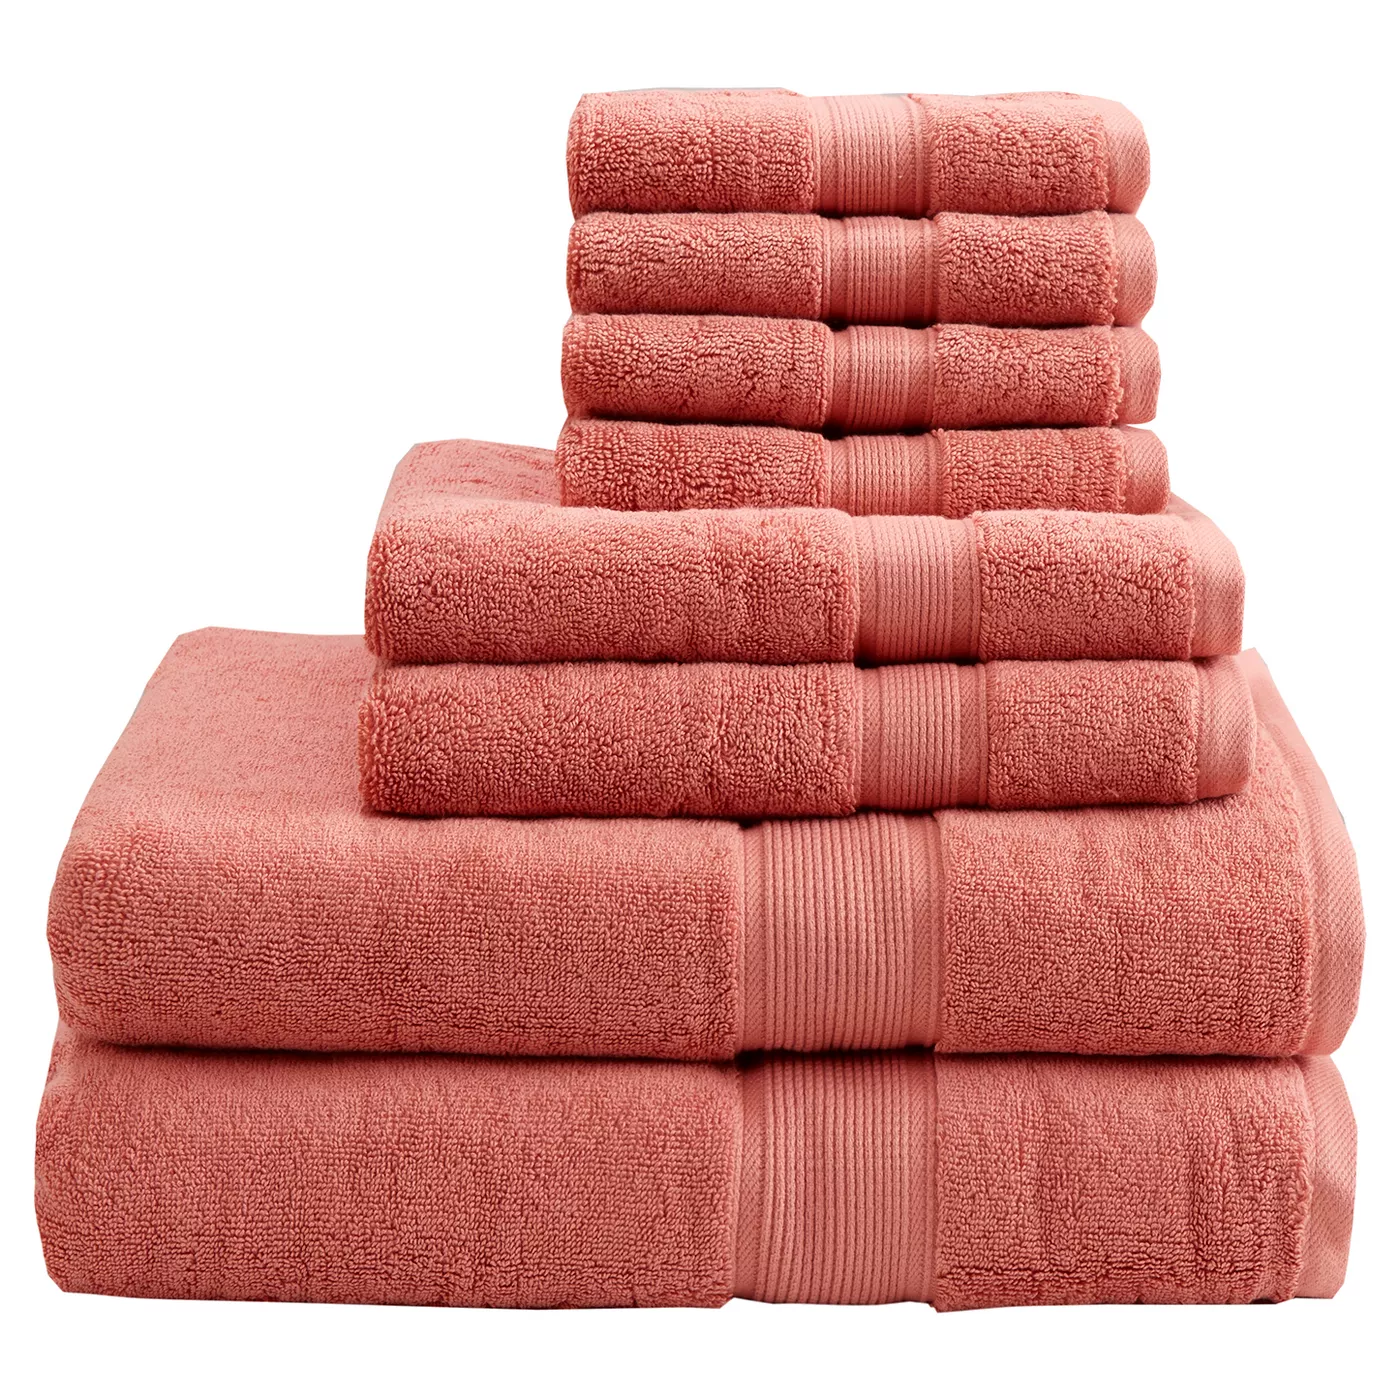 8pc Cotton Bath Towel Set - image 1 of 6